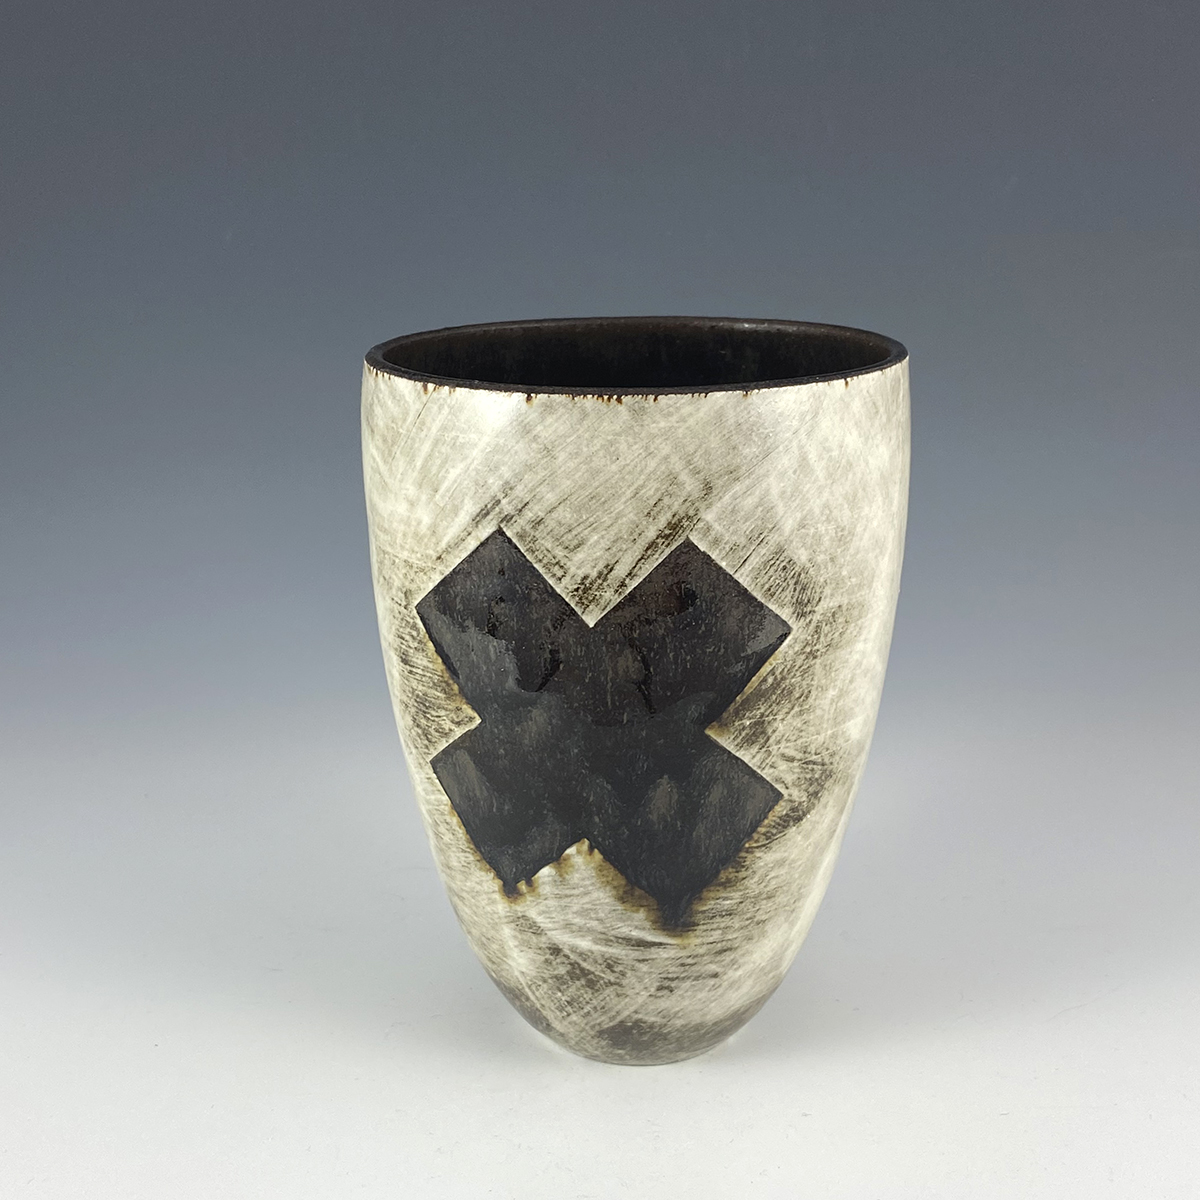 Black cross vase with porcelain